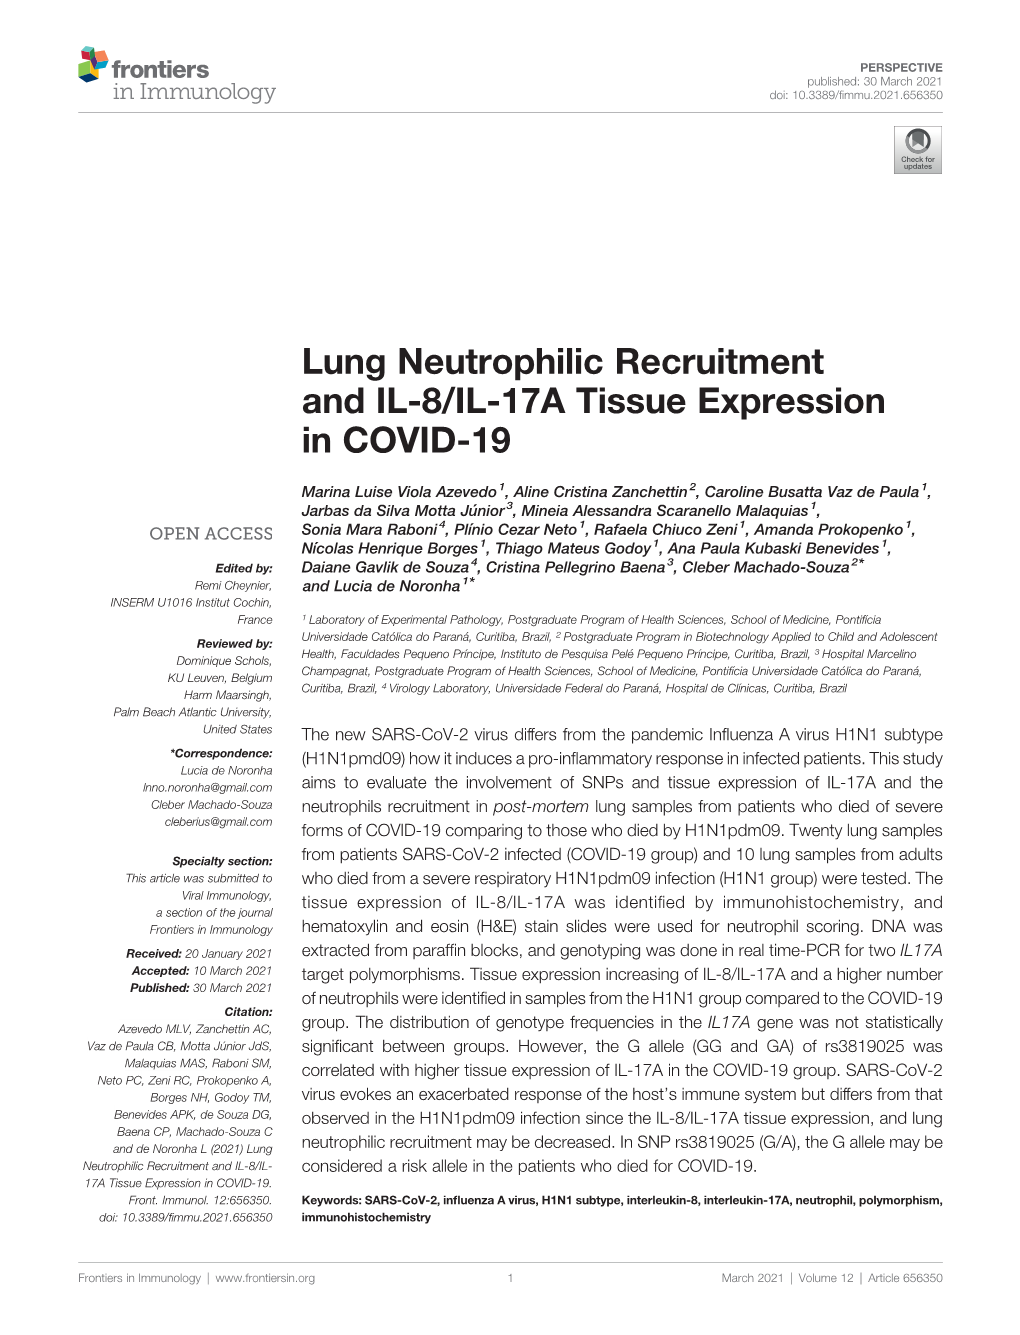 Lung Neutrophilic Recruitment and IL-8/IL-17A Tissue Expression in COVID-19